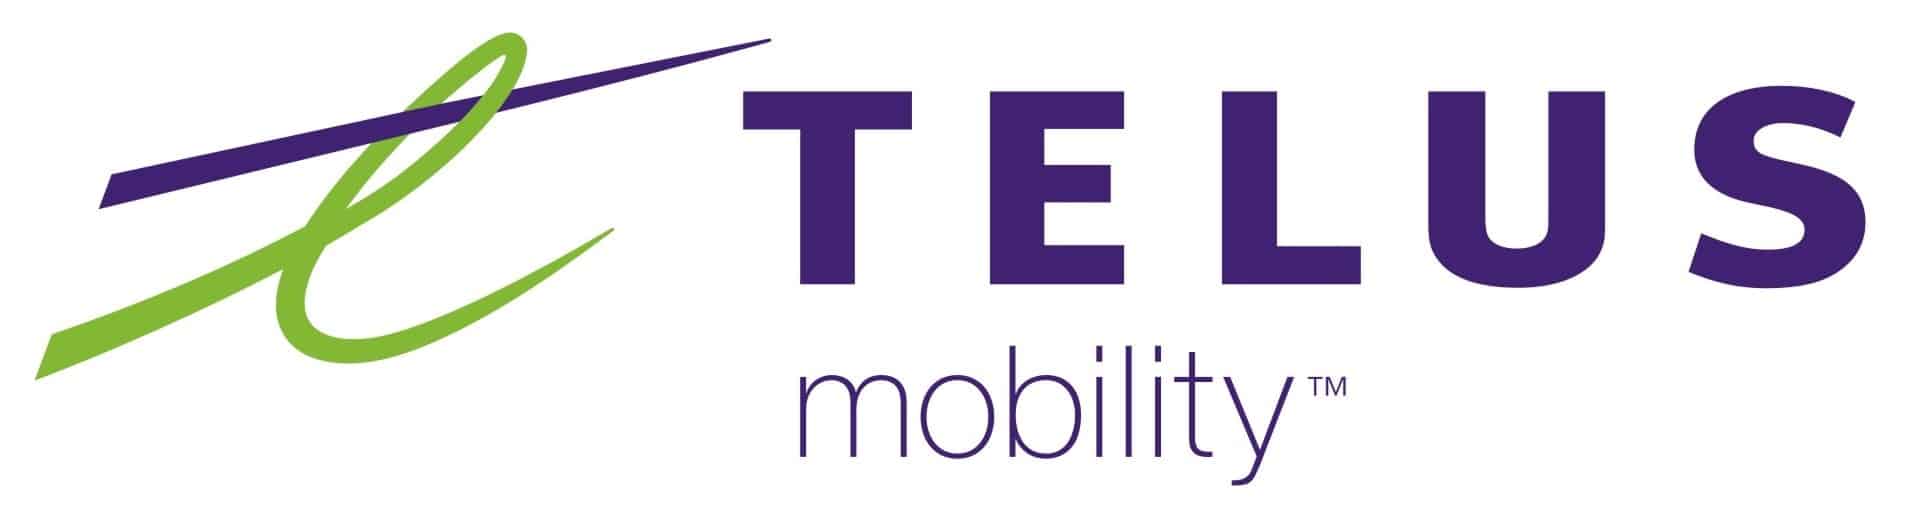 Telus Mobility logo